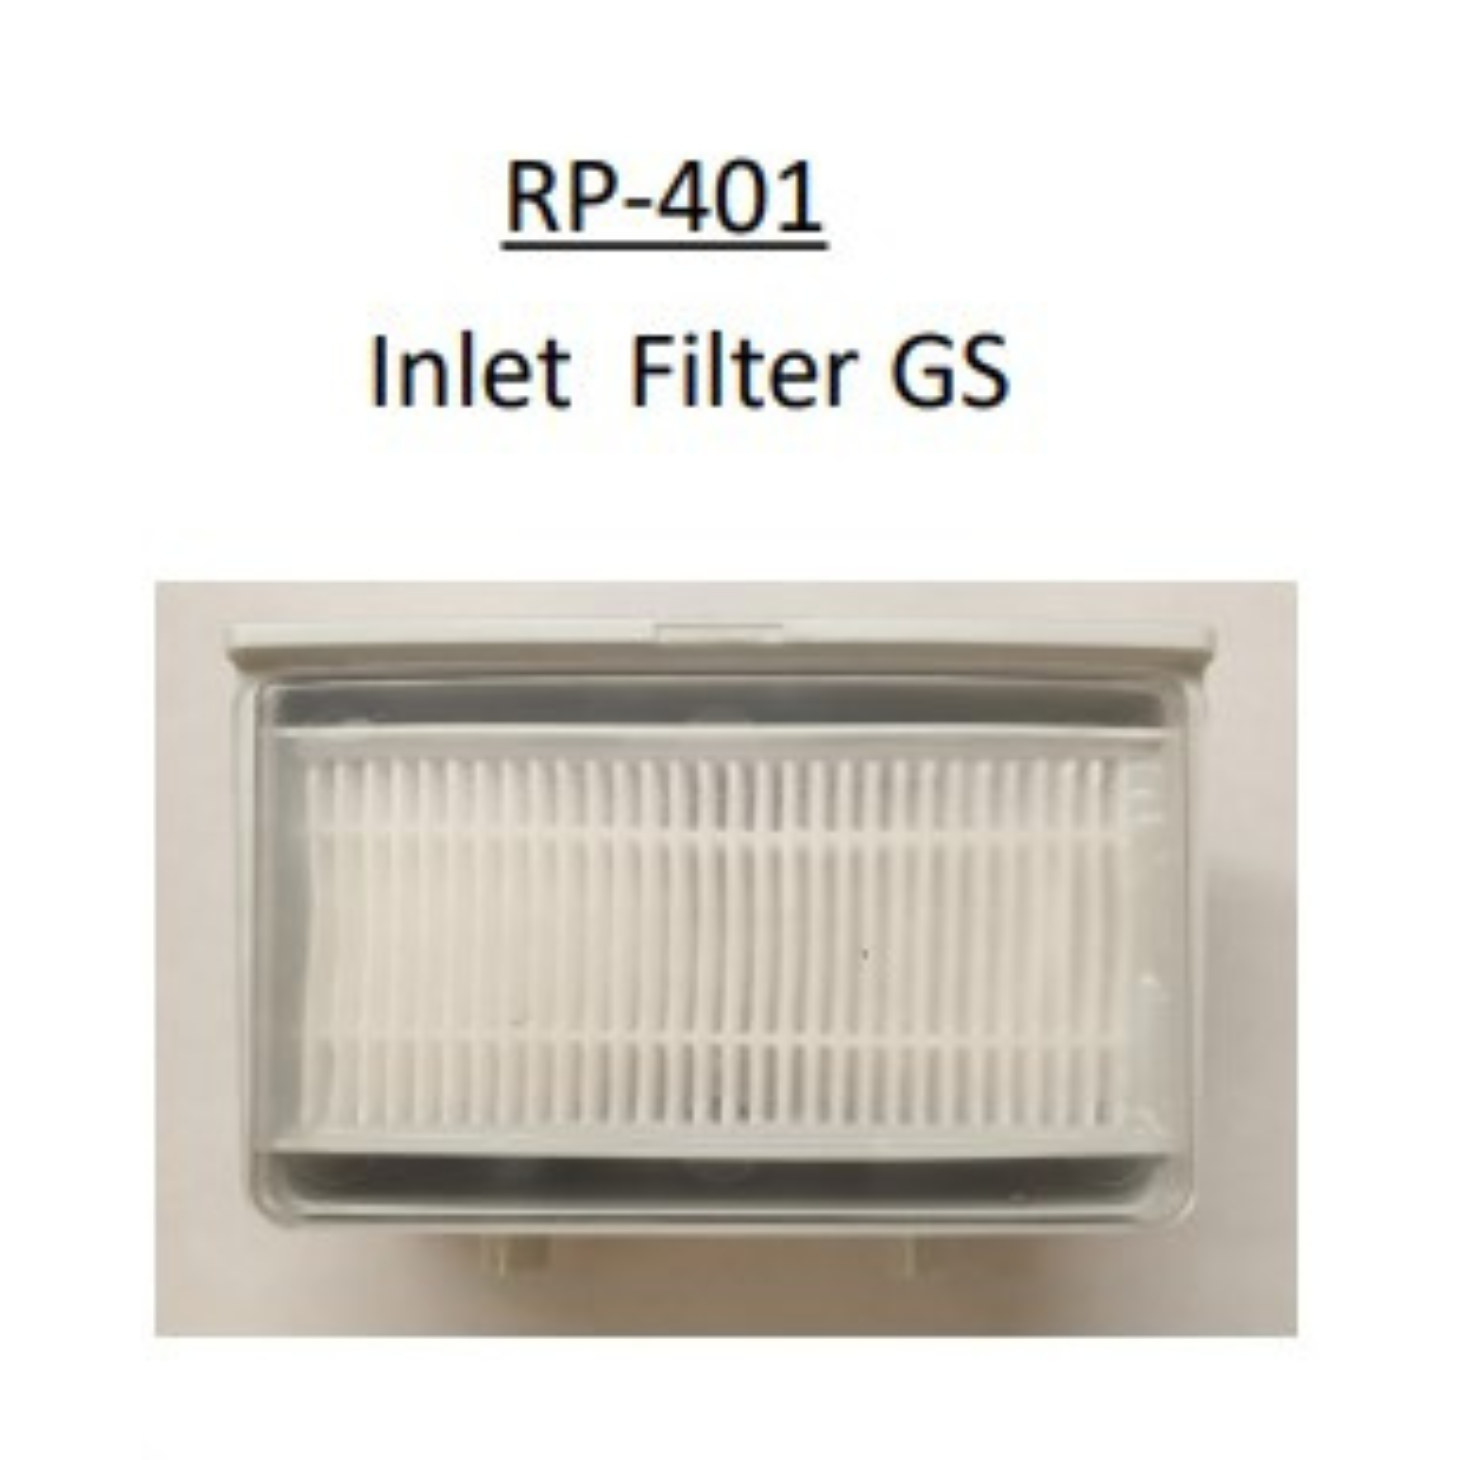 Inlet Filter